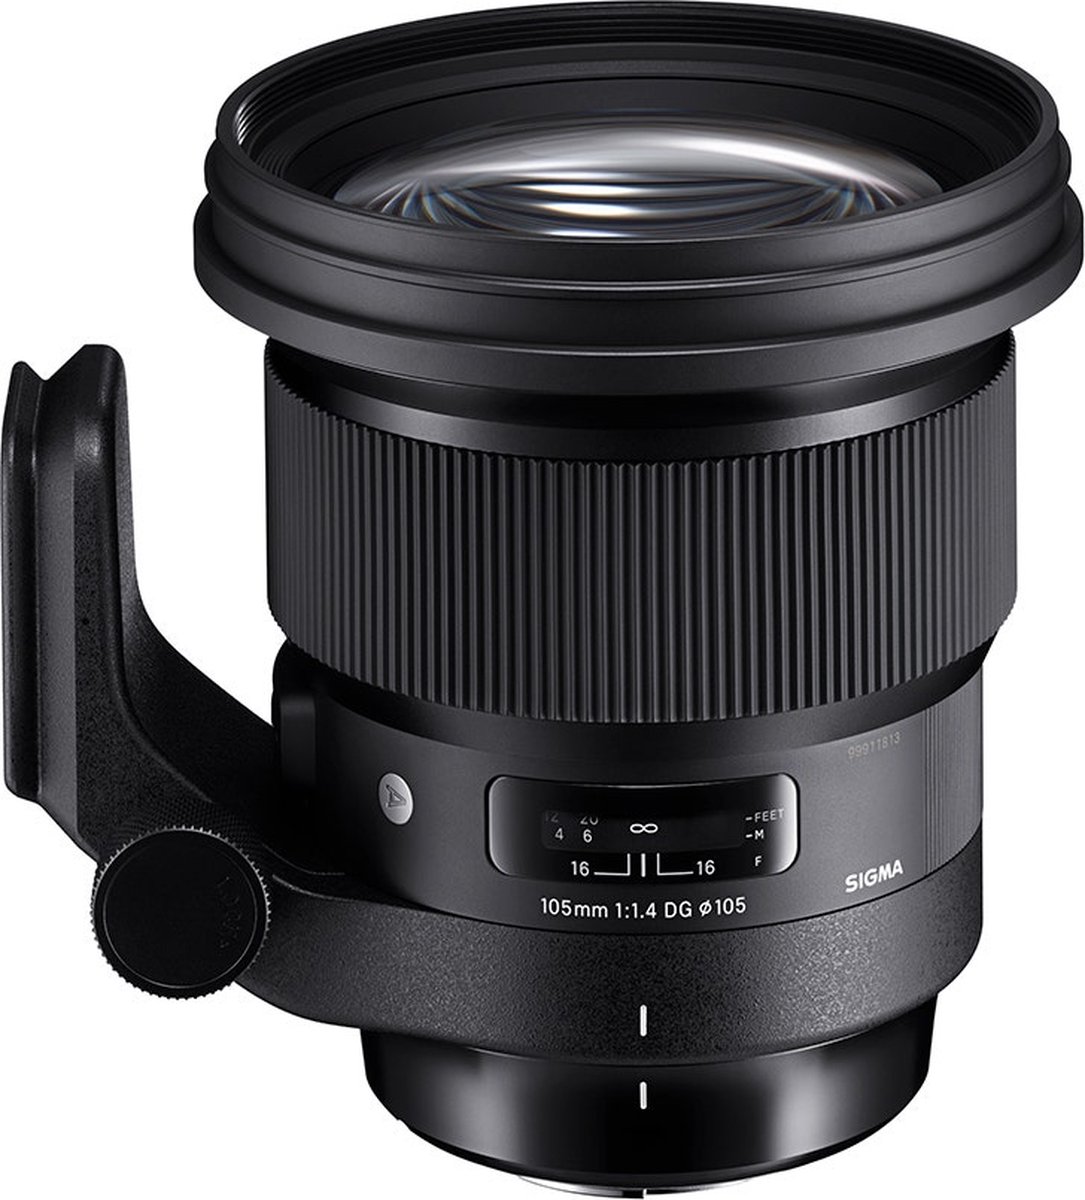 Sigma 105mm F1.4 DG HSM - Art Nikon F-mount